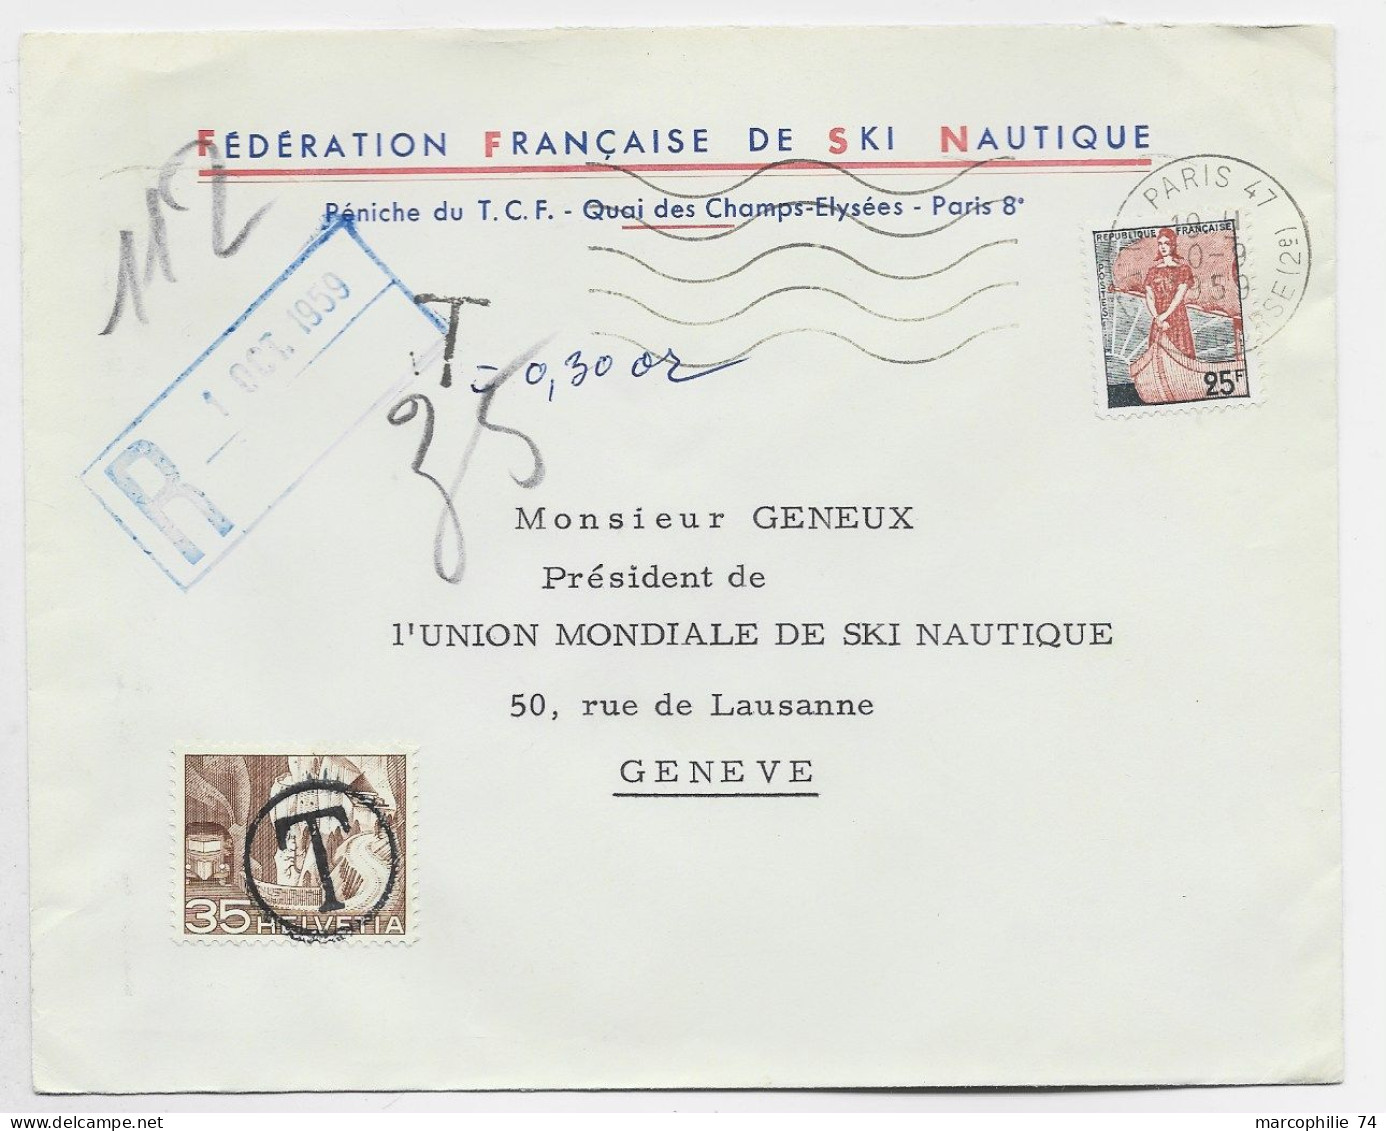 FRANCE LETTRE COVER ENTETE FEDERATION FRANCAISE DE SKI NAUTIQUE MARIANNE A LE NEF 25FR PARIS 1959 POUR SUISSE TAXE 35C - Ski Náutico